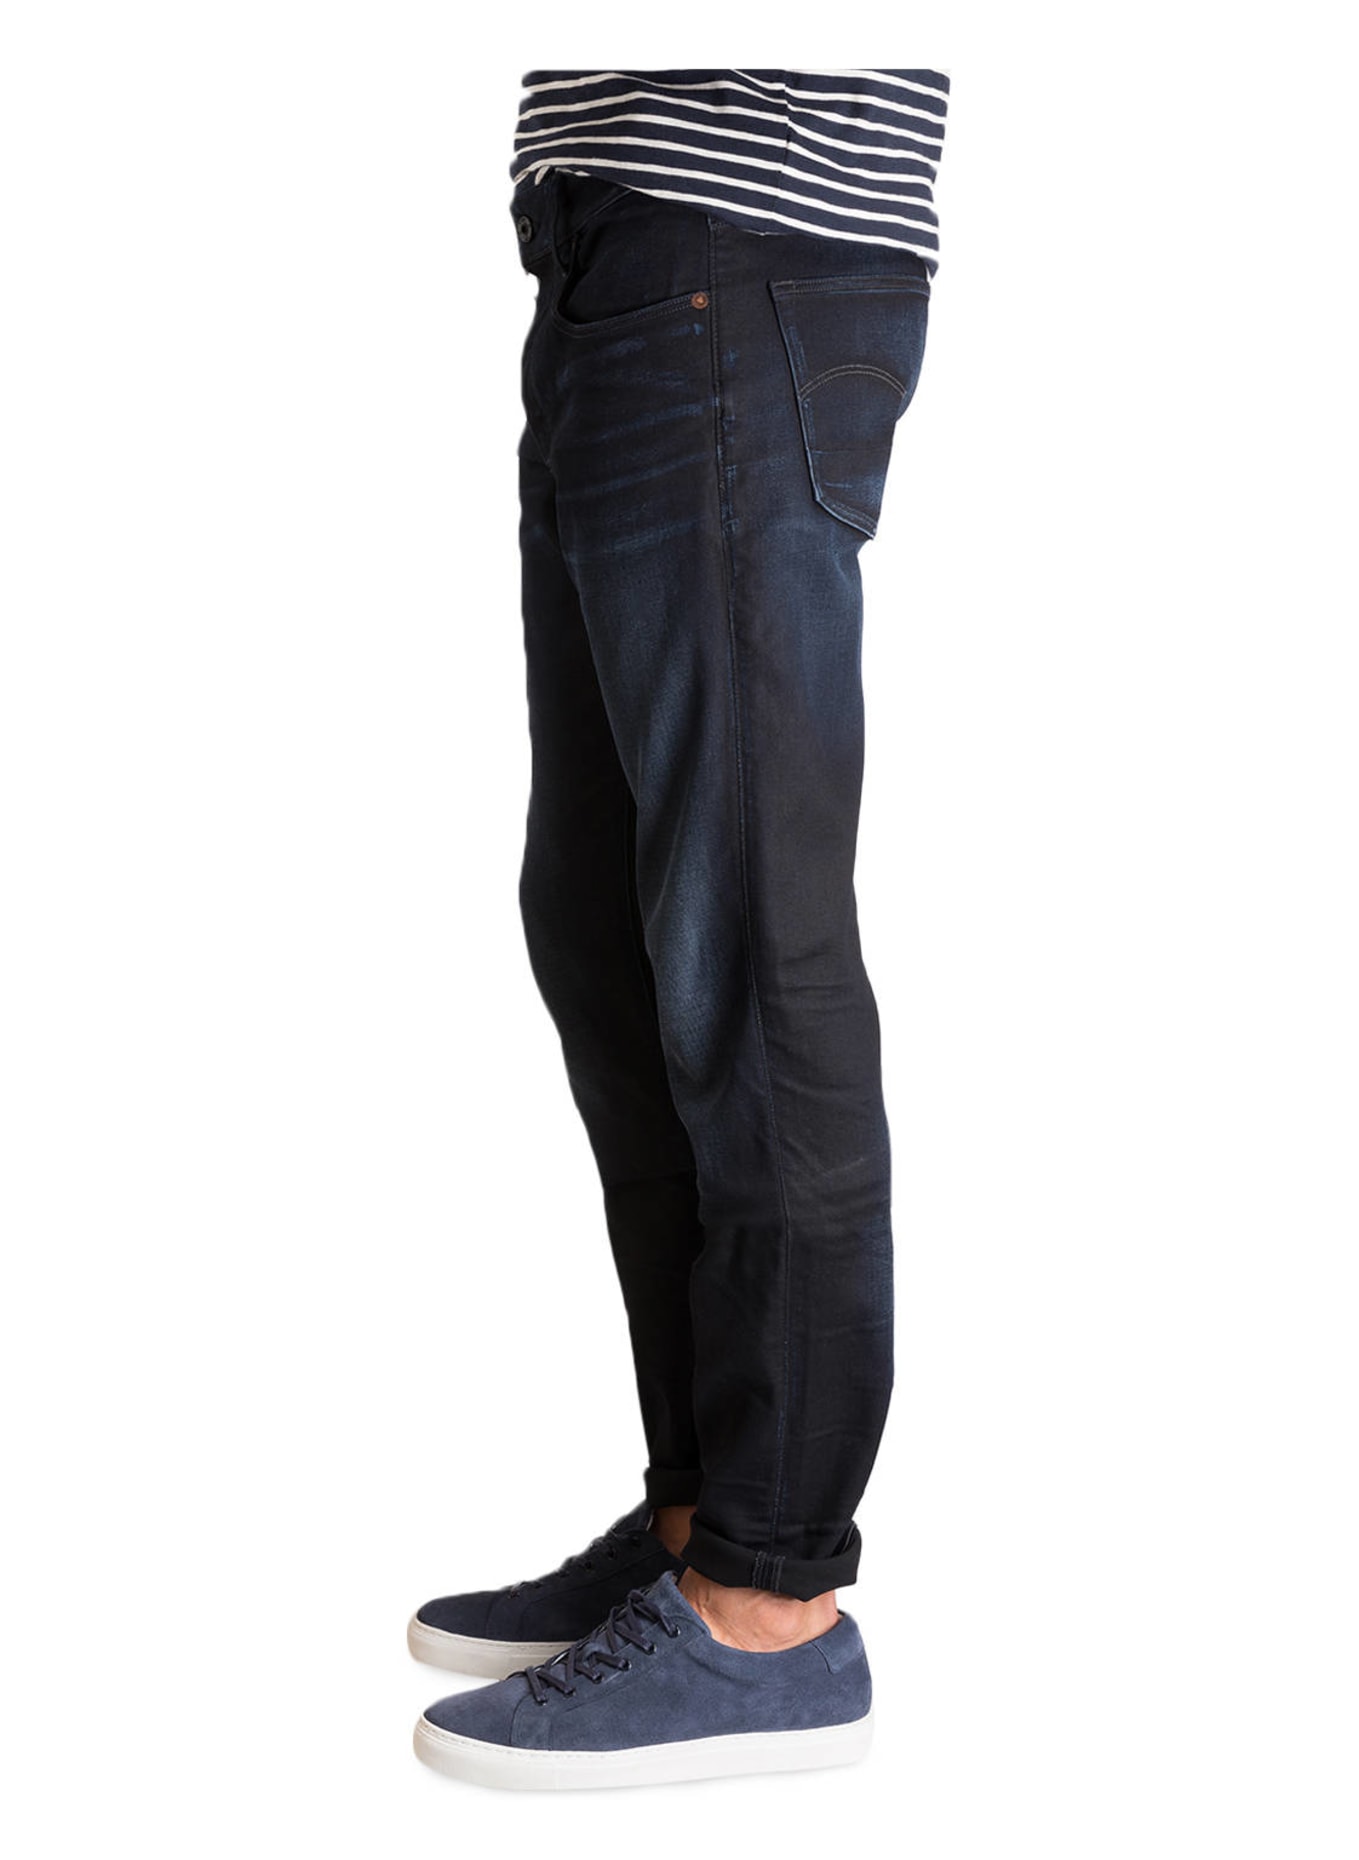 G-Star RAW Jeans 3301 Slim Fit, Farbe: 89 DK AGED (Bild 4)